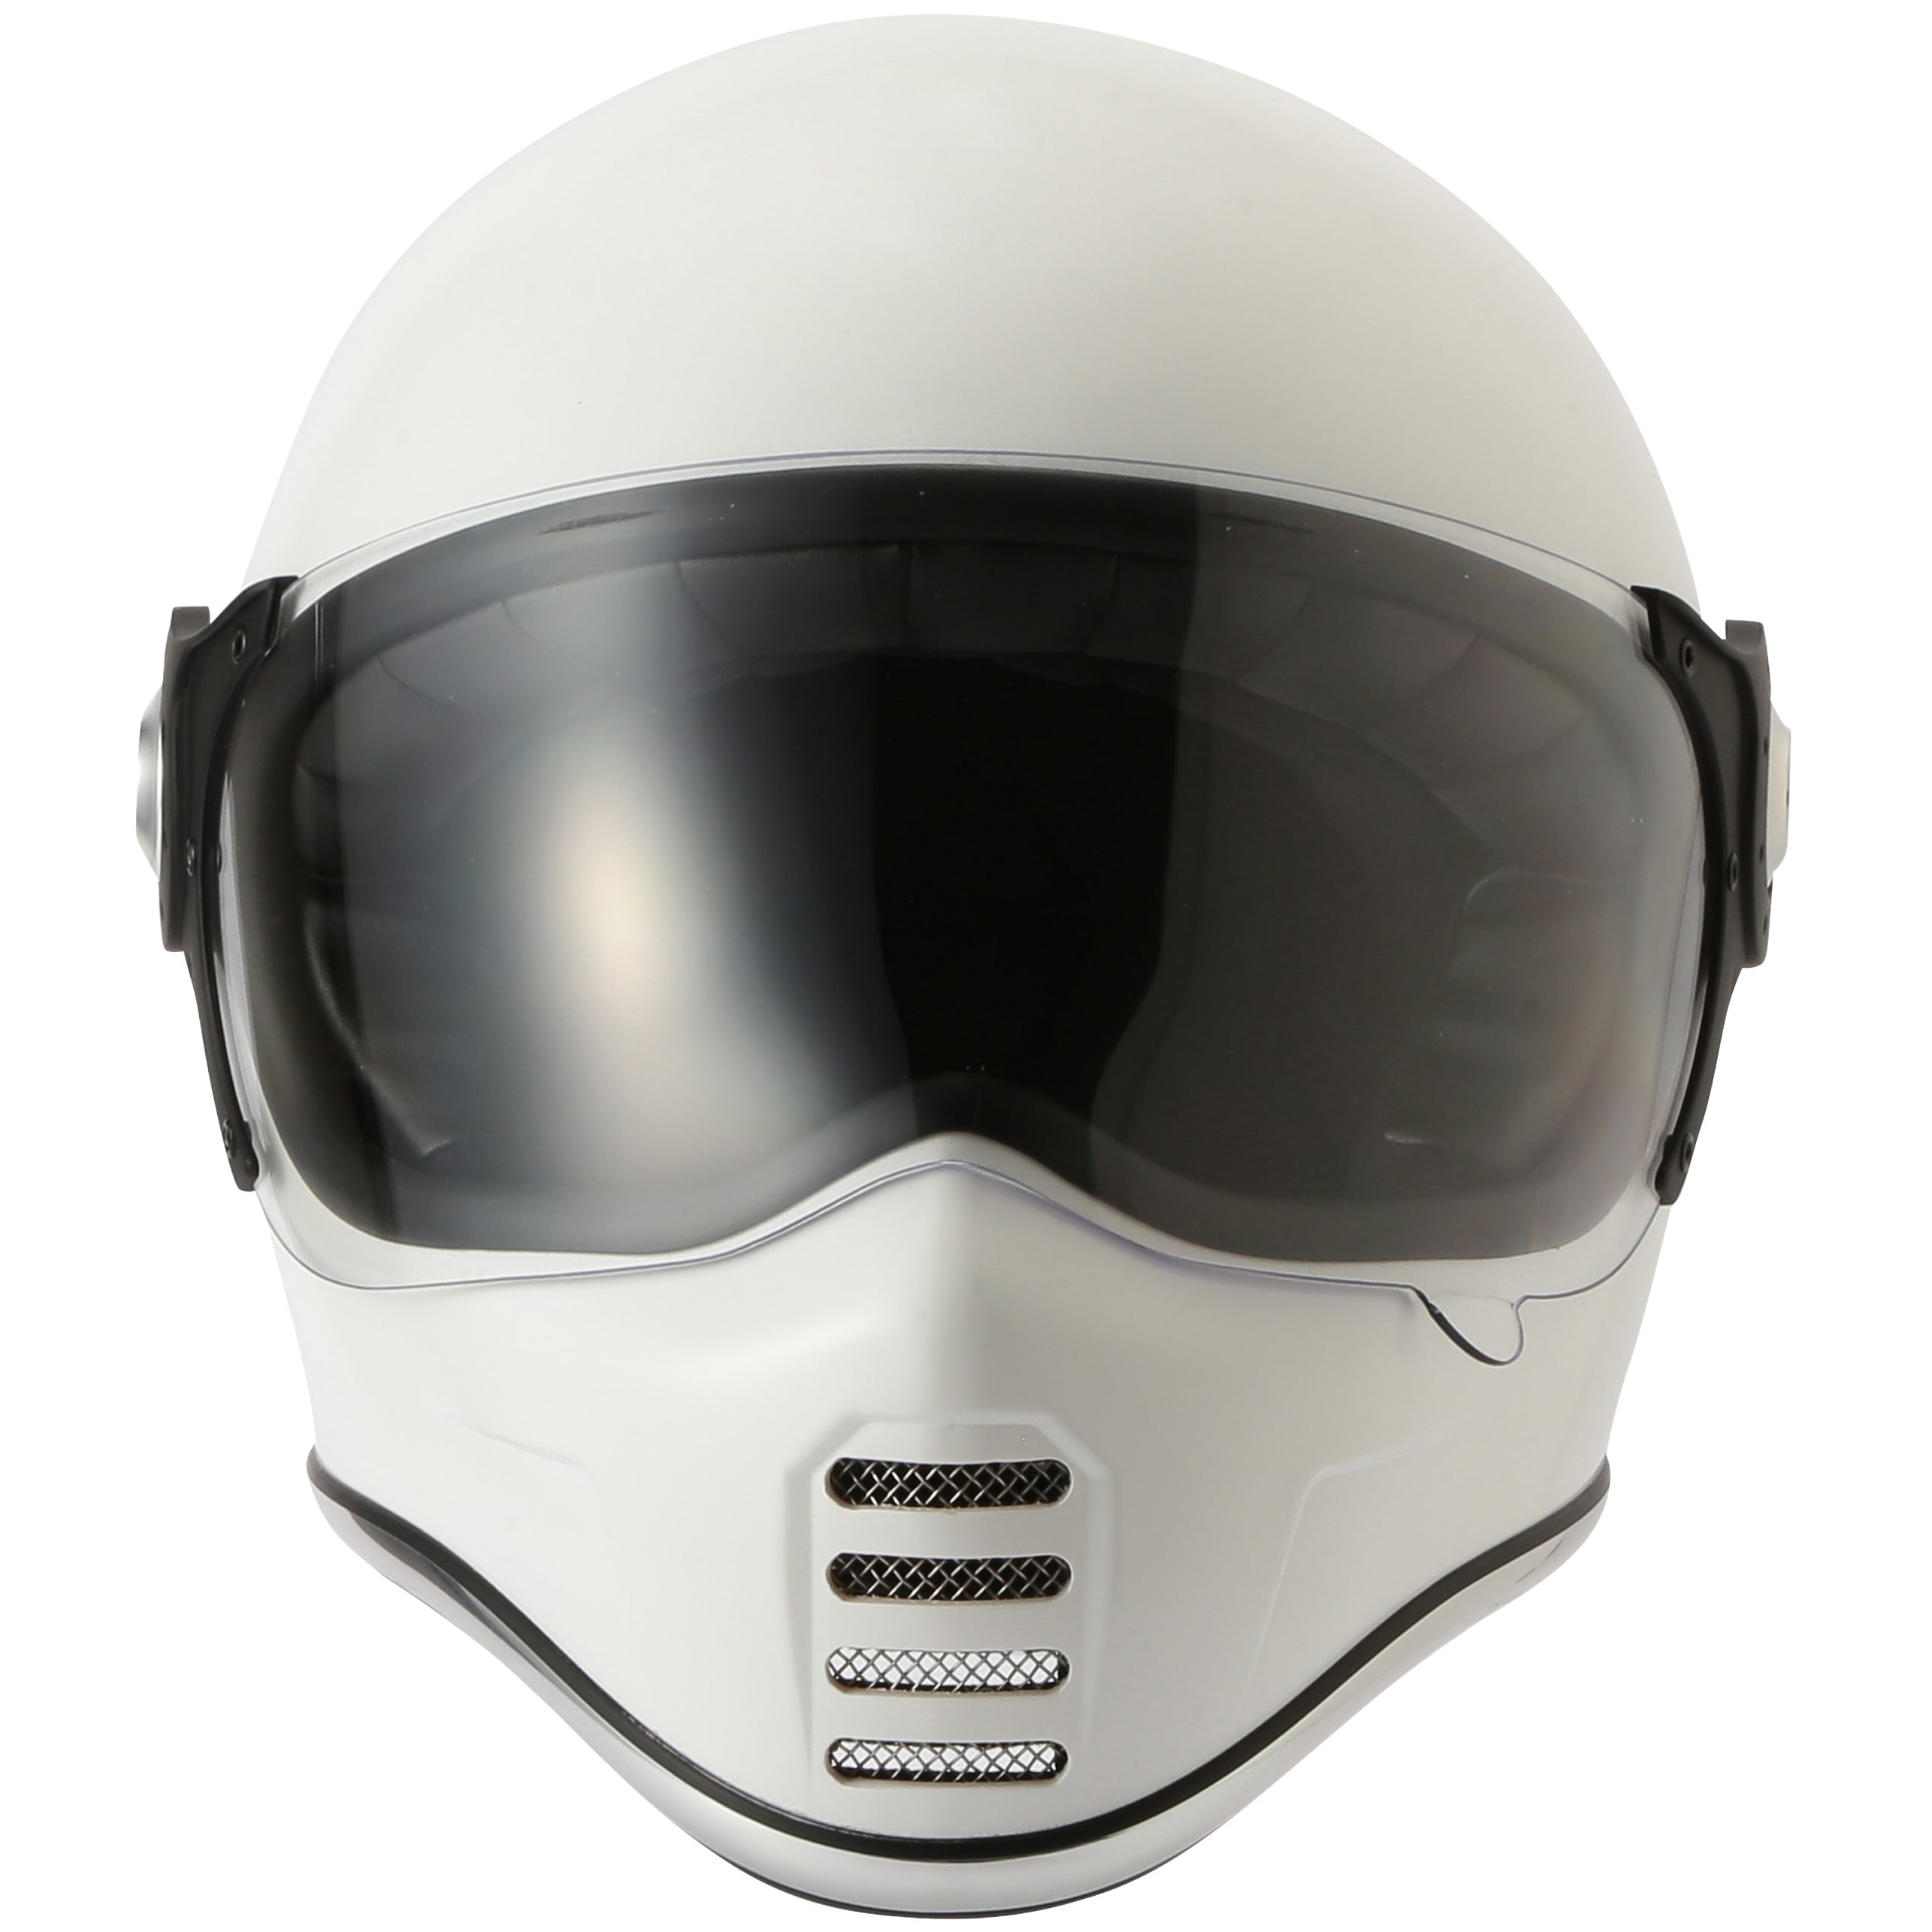 RIDEZ XX WHITE motorcycle full face helmet 